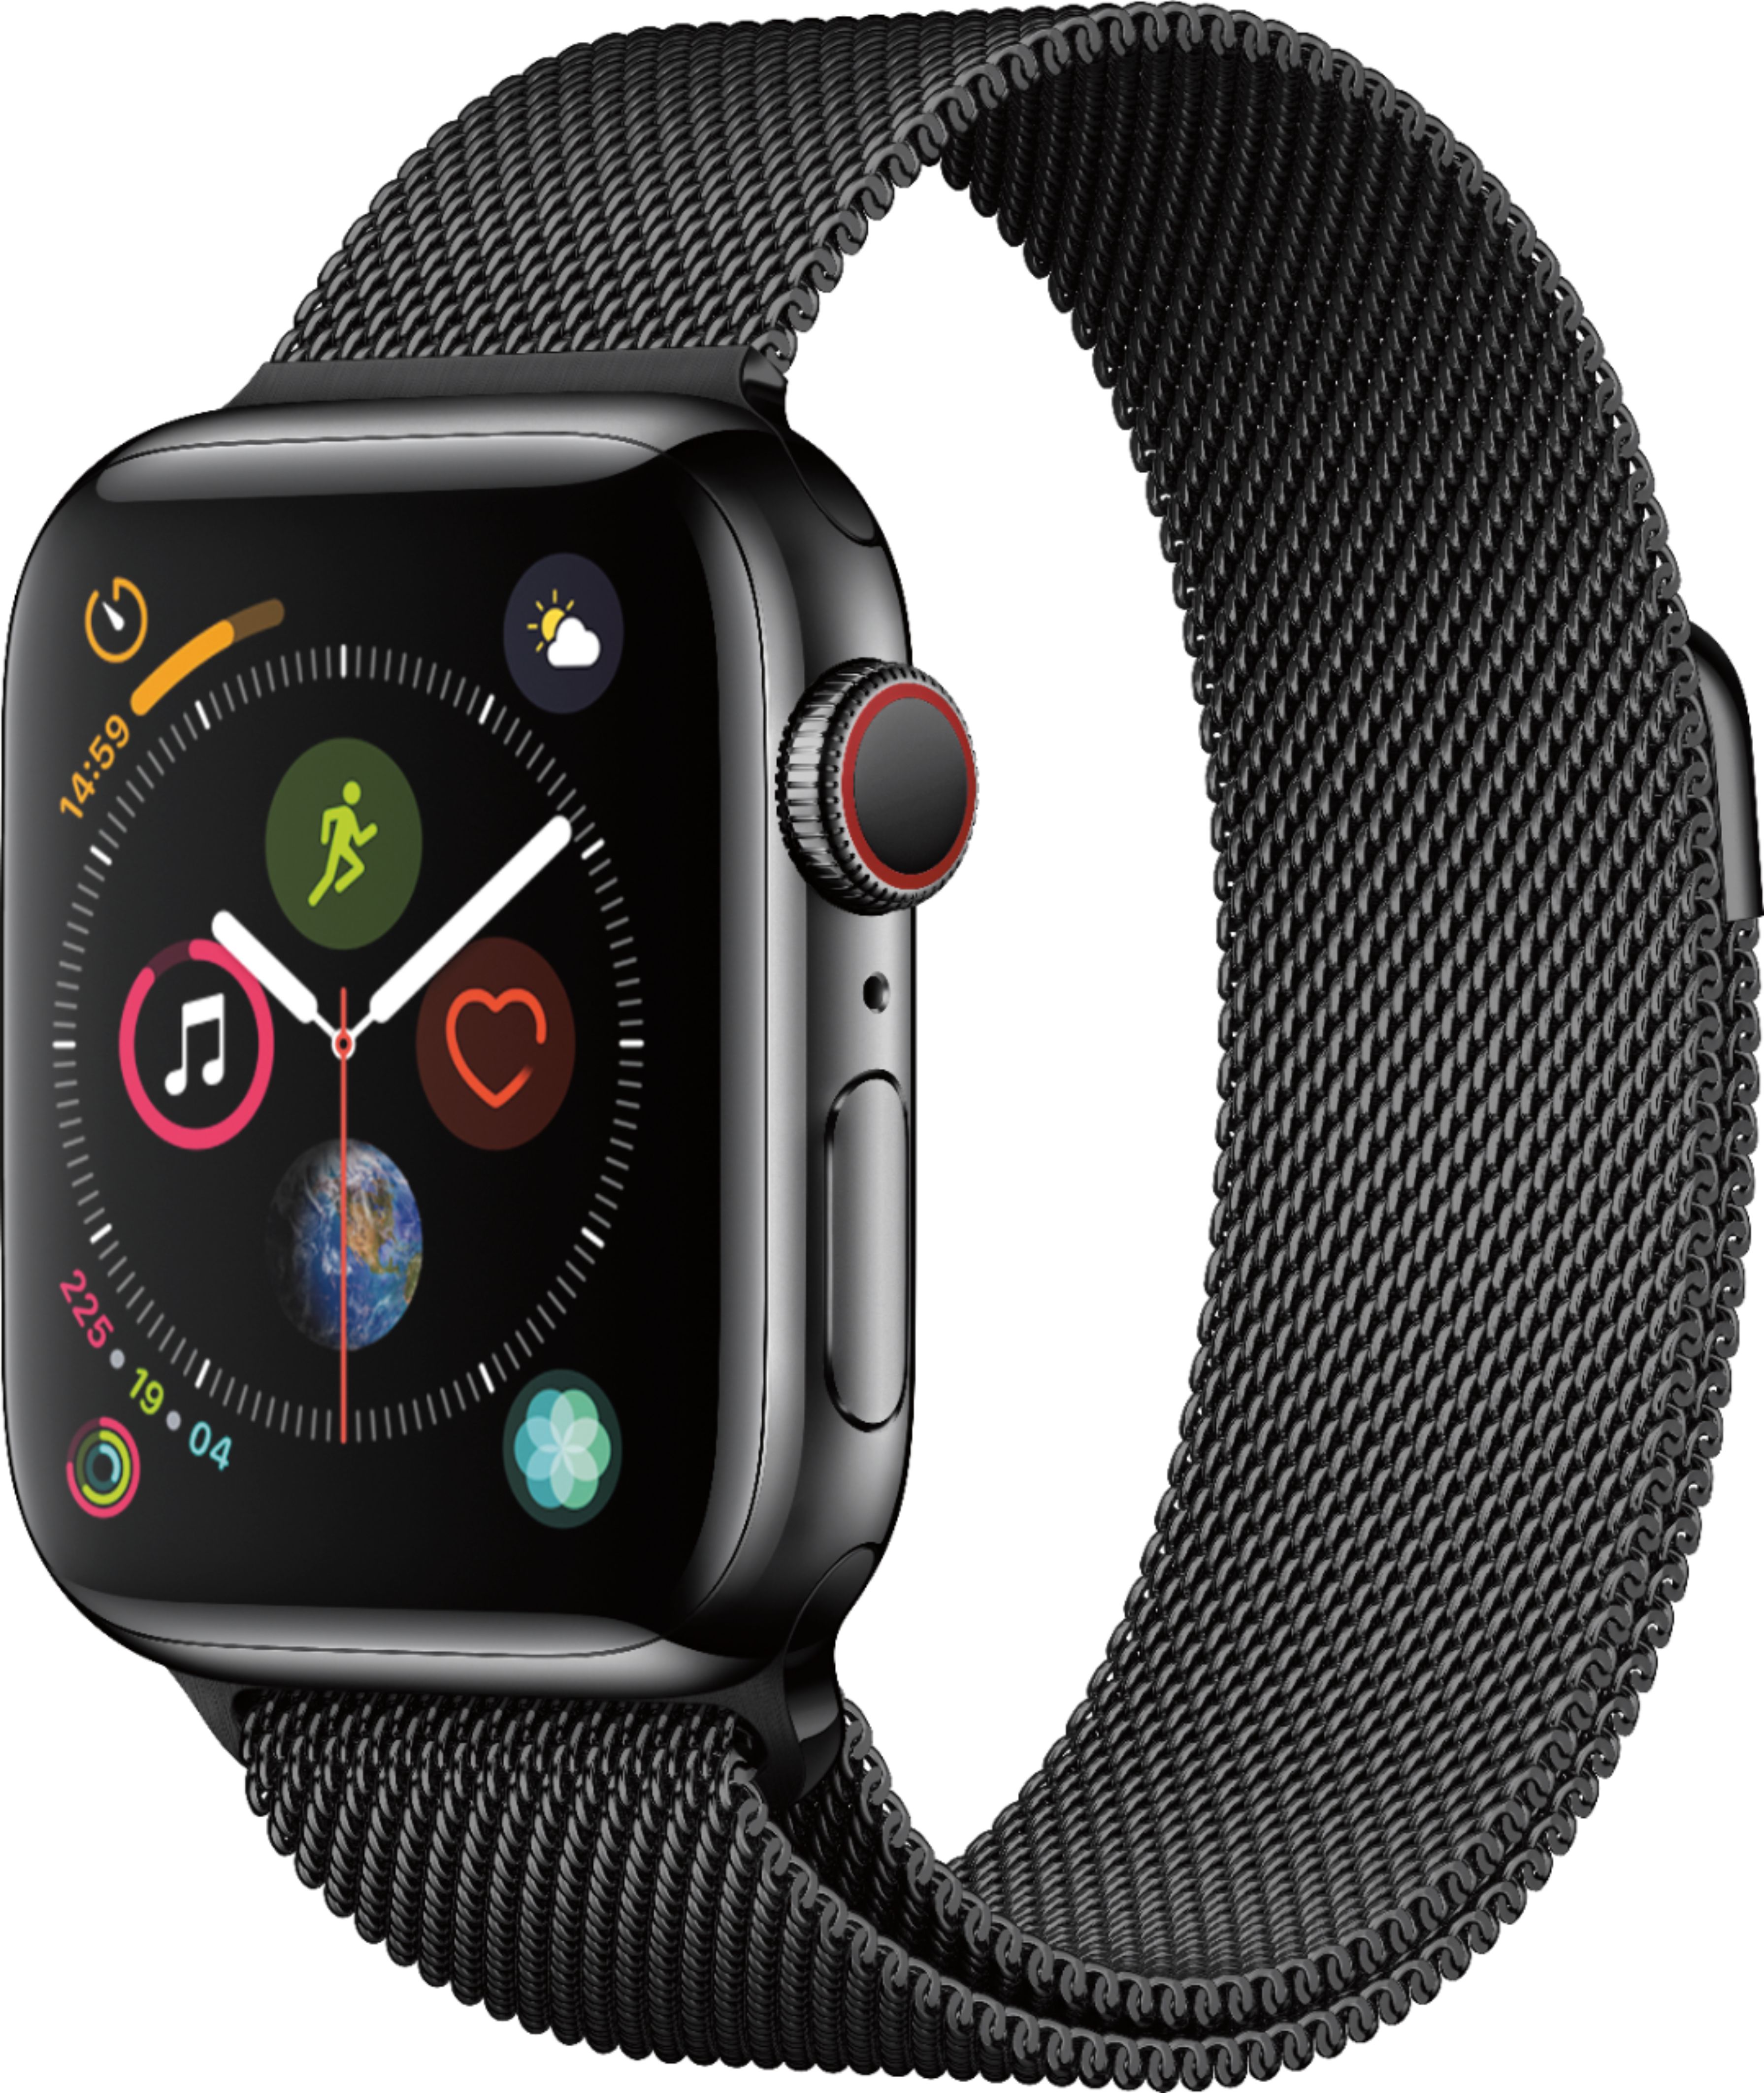 Best Buy: Geek Squad Certified Refurbished Apple Watch Series 4